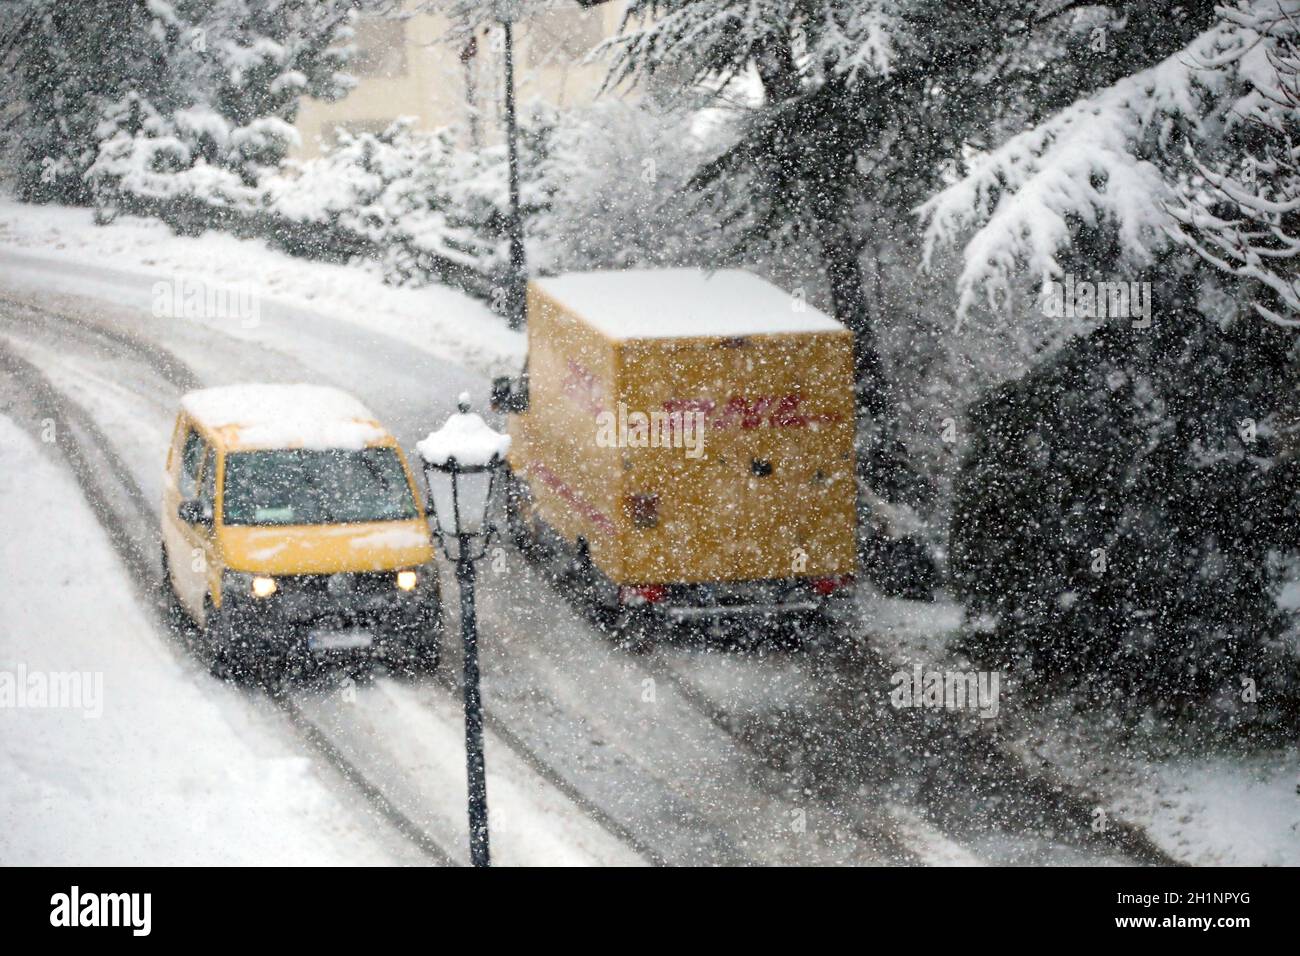 Auch die Fahrer der Fahrzeuge der Post haben mit dem Neuschnee zu kämpfen Wintereinbruch im Landkreis-Breisgau Hochschwarzwald. How here im no Stockfoto